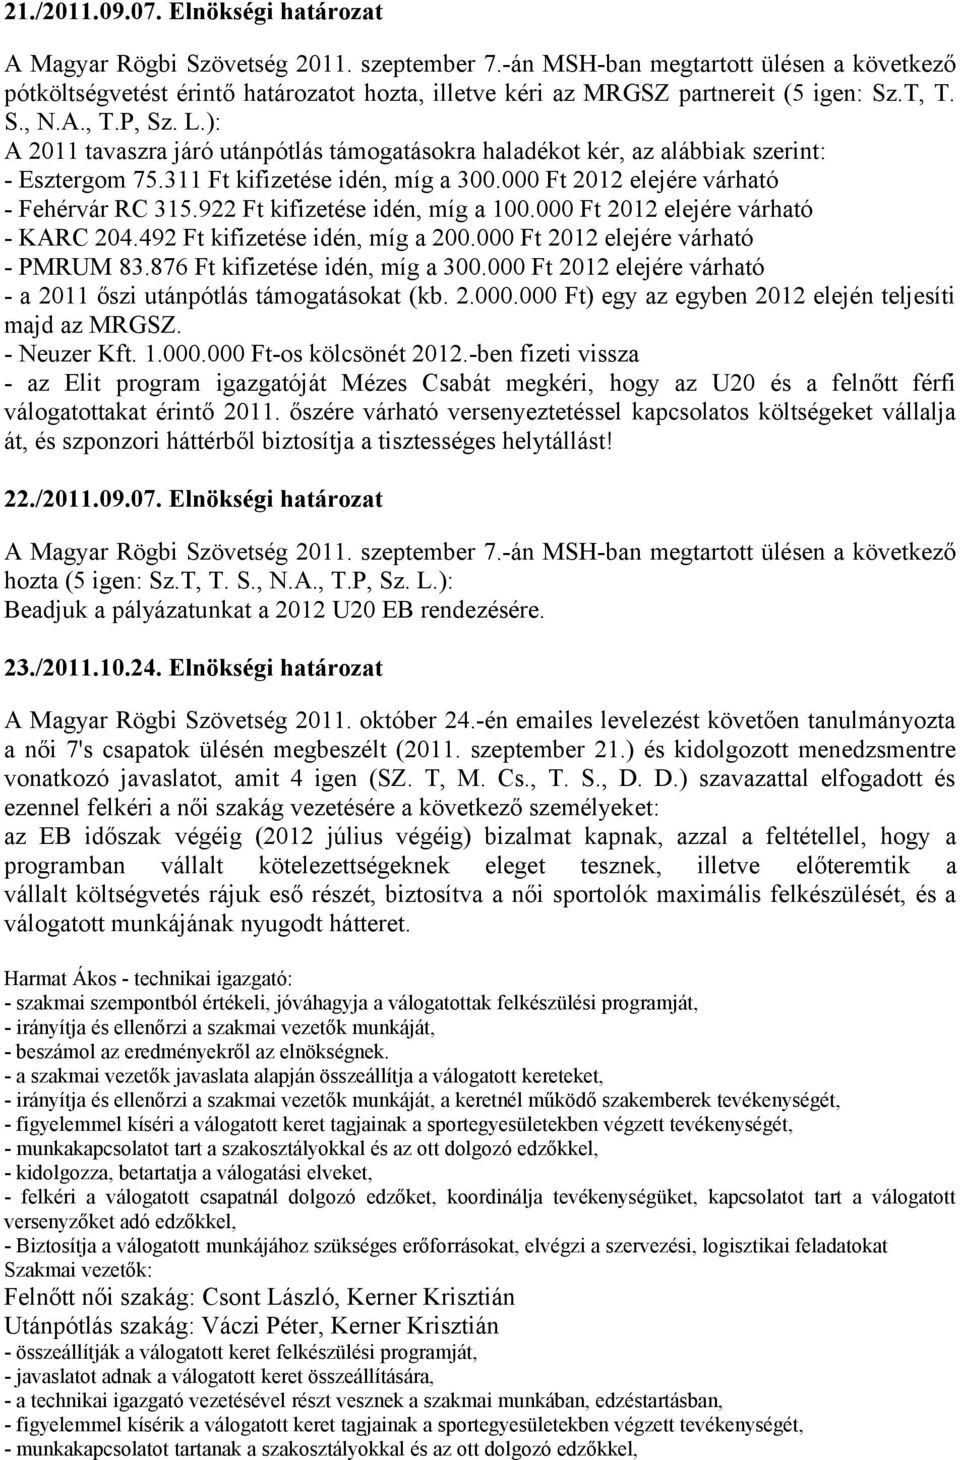 ): A 2011 tavaszra járó utánpótlás támogatásokra haladékot kér, az alábbiak szerint: - Esztergom 75.311 Ft kifizetése idén, míg a 300.000 Ft 2012 elejére várható - Fehérvár RC 315.